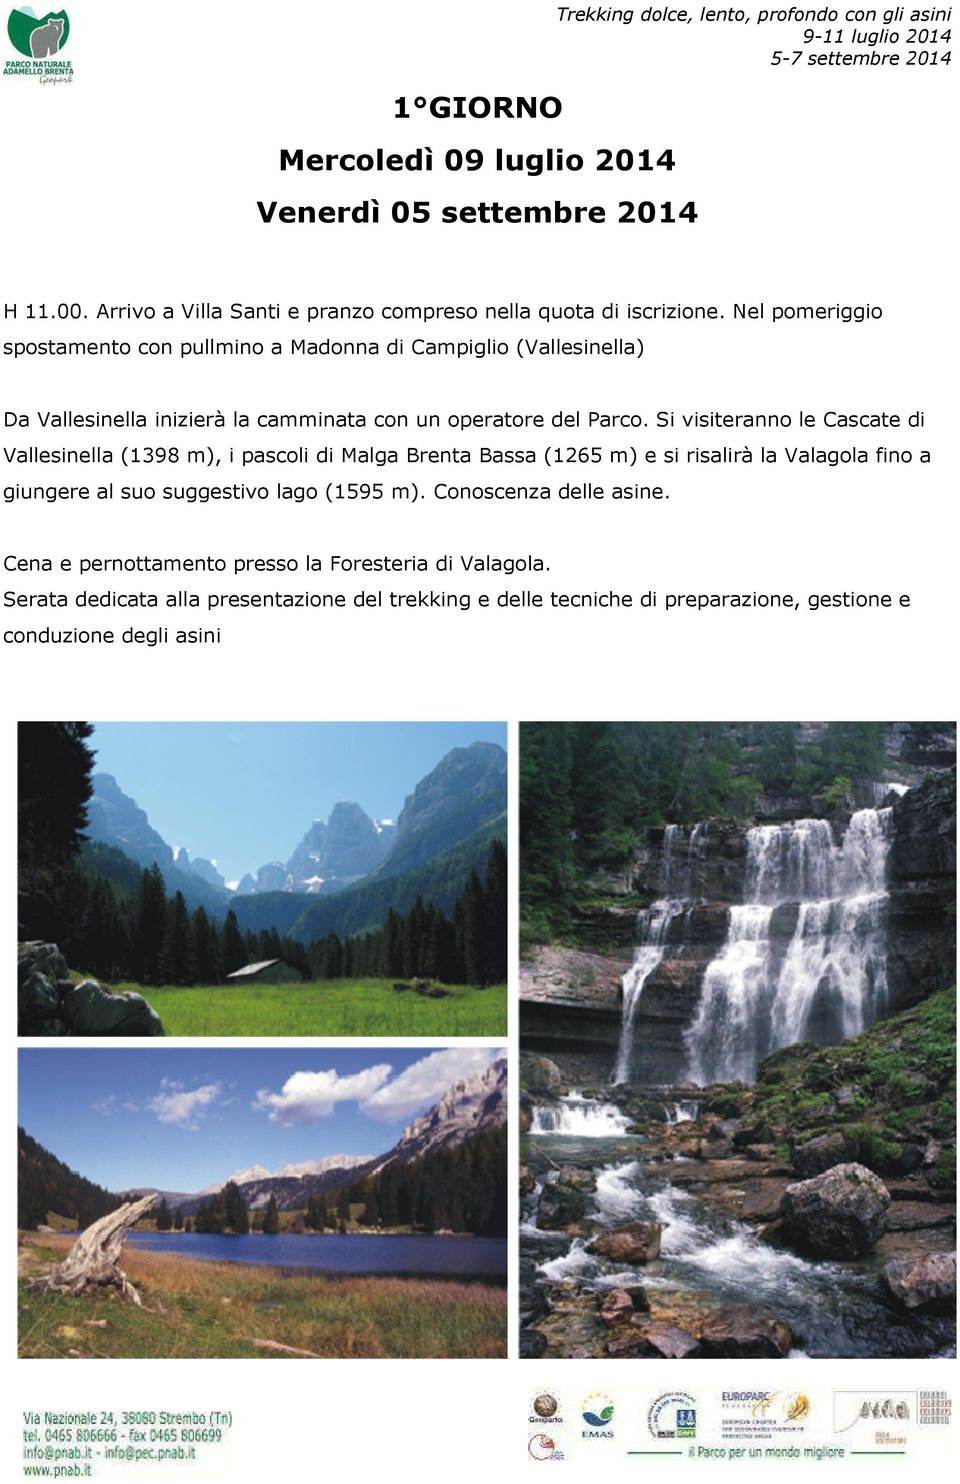 Si visiteranno le Cascate di Vallesinella (1398 m), i pascoli di Malga Brenta Bassa (1265 m) e si risalirà la Valagola fino a giungere al suo suggestivo lago